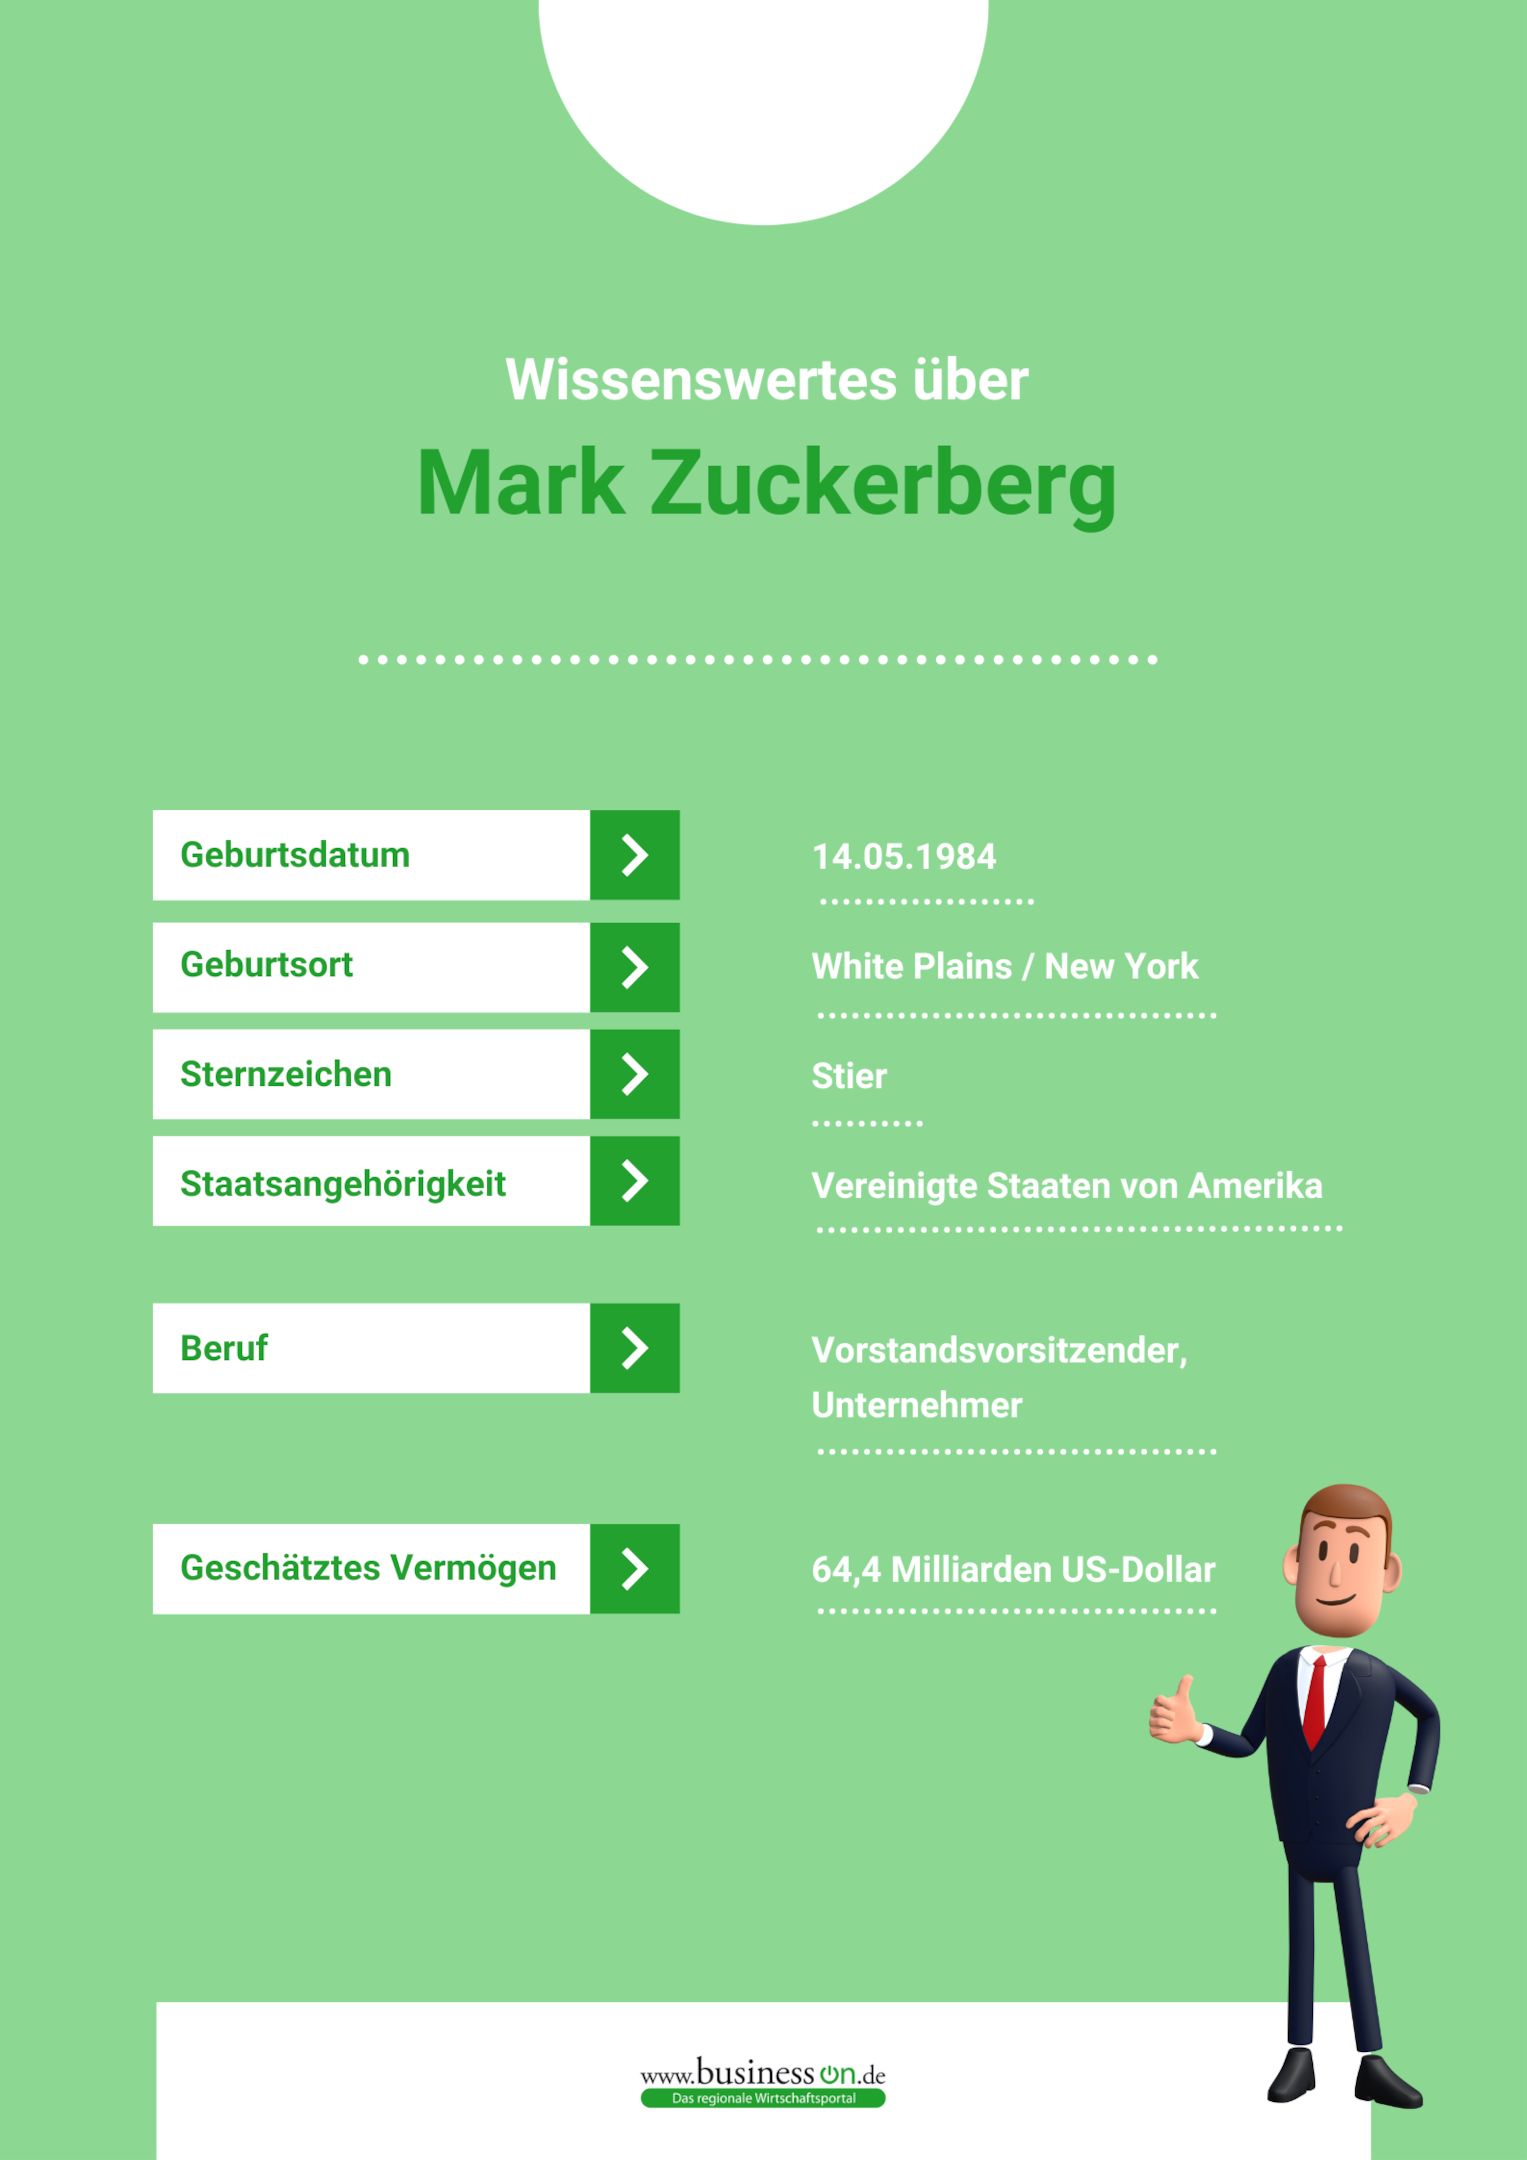 Wissenswertes über Mark Zuckerberg